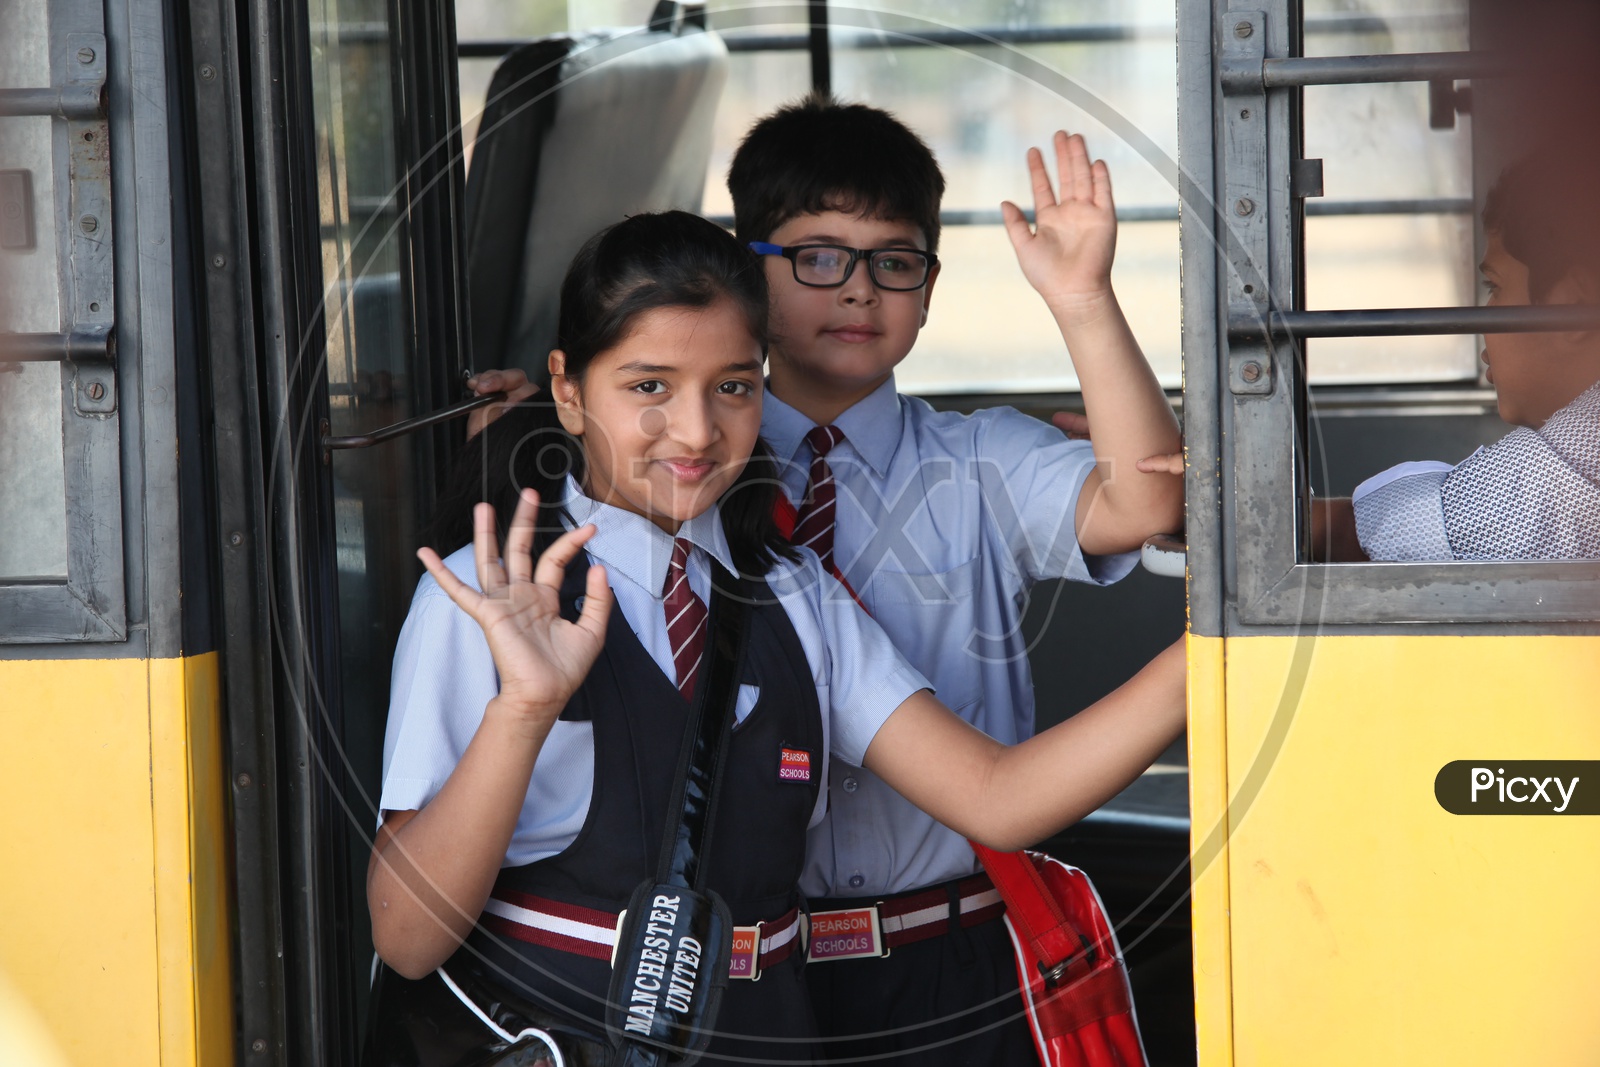 Kids Boarding School Bus